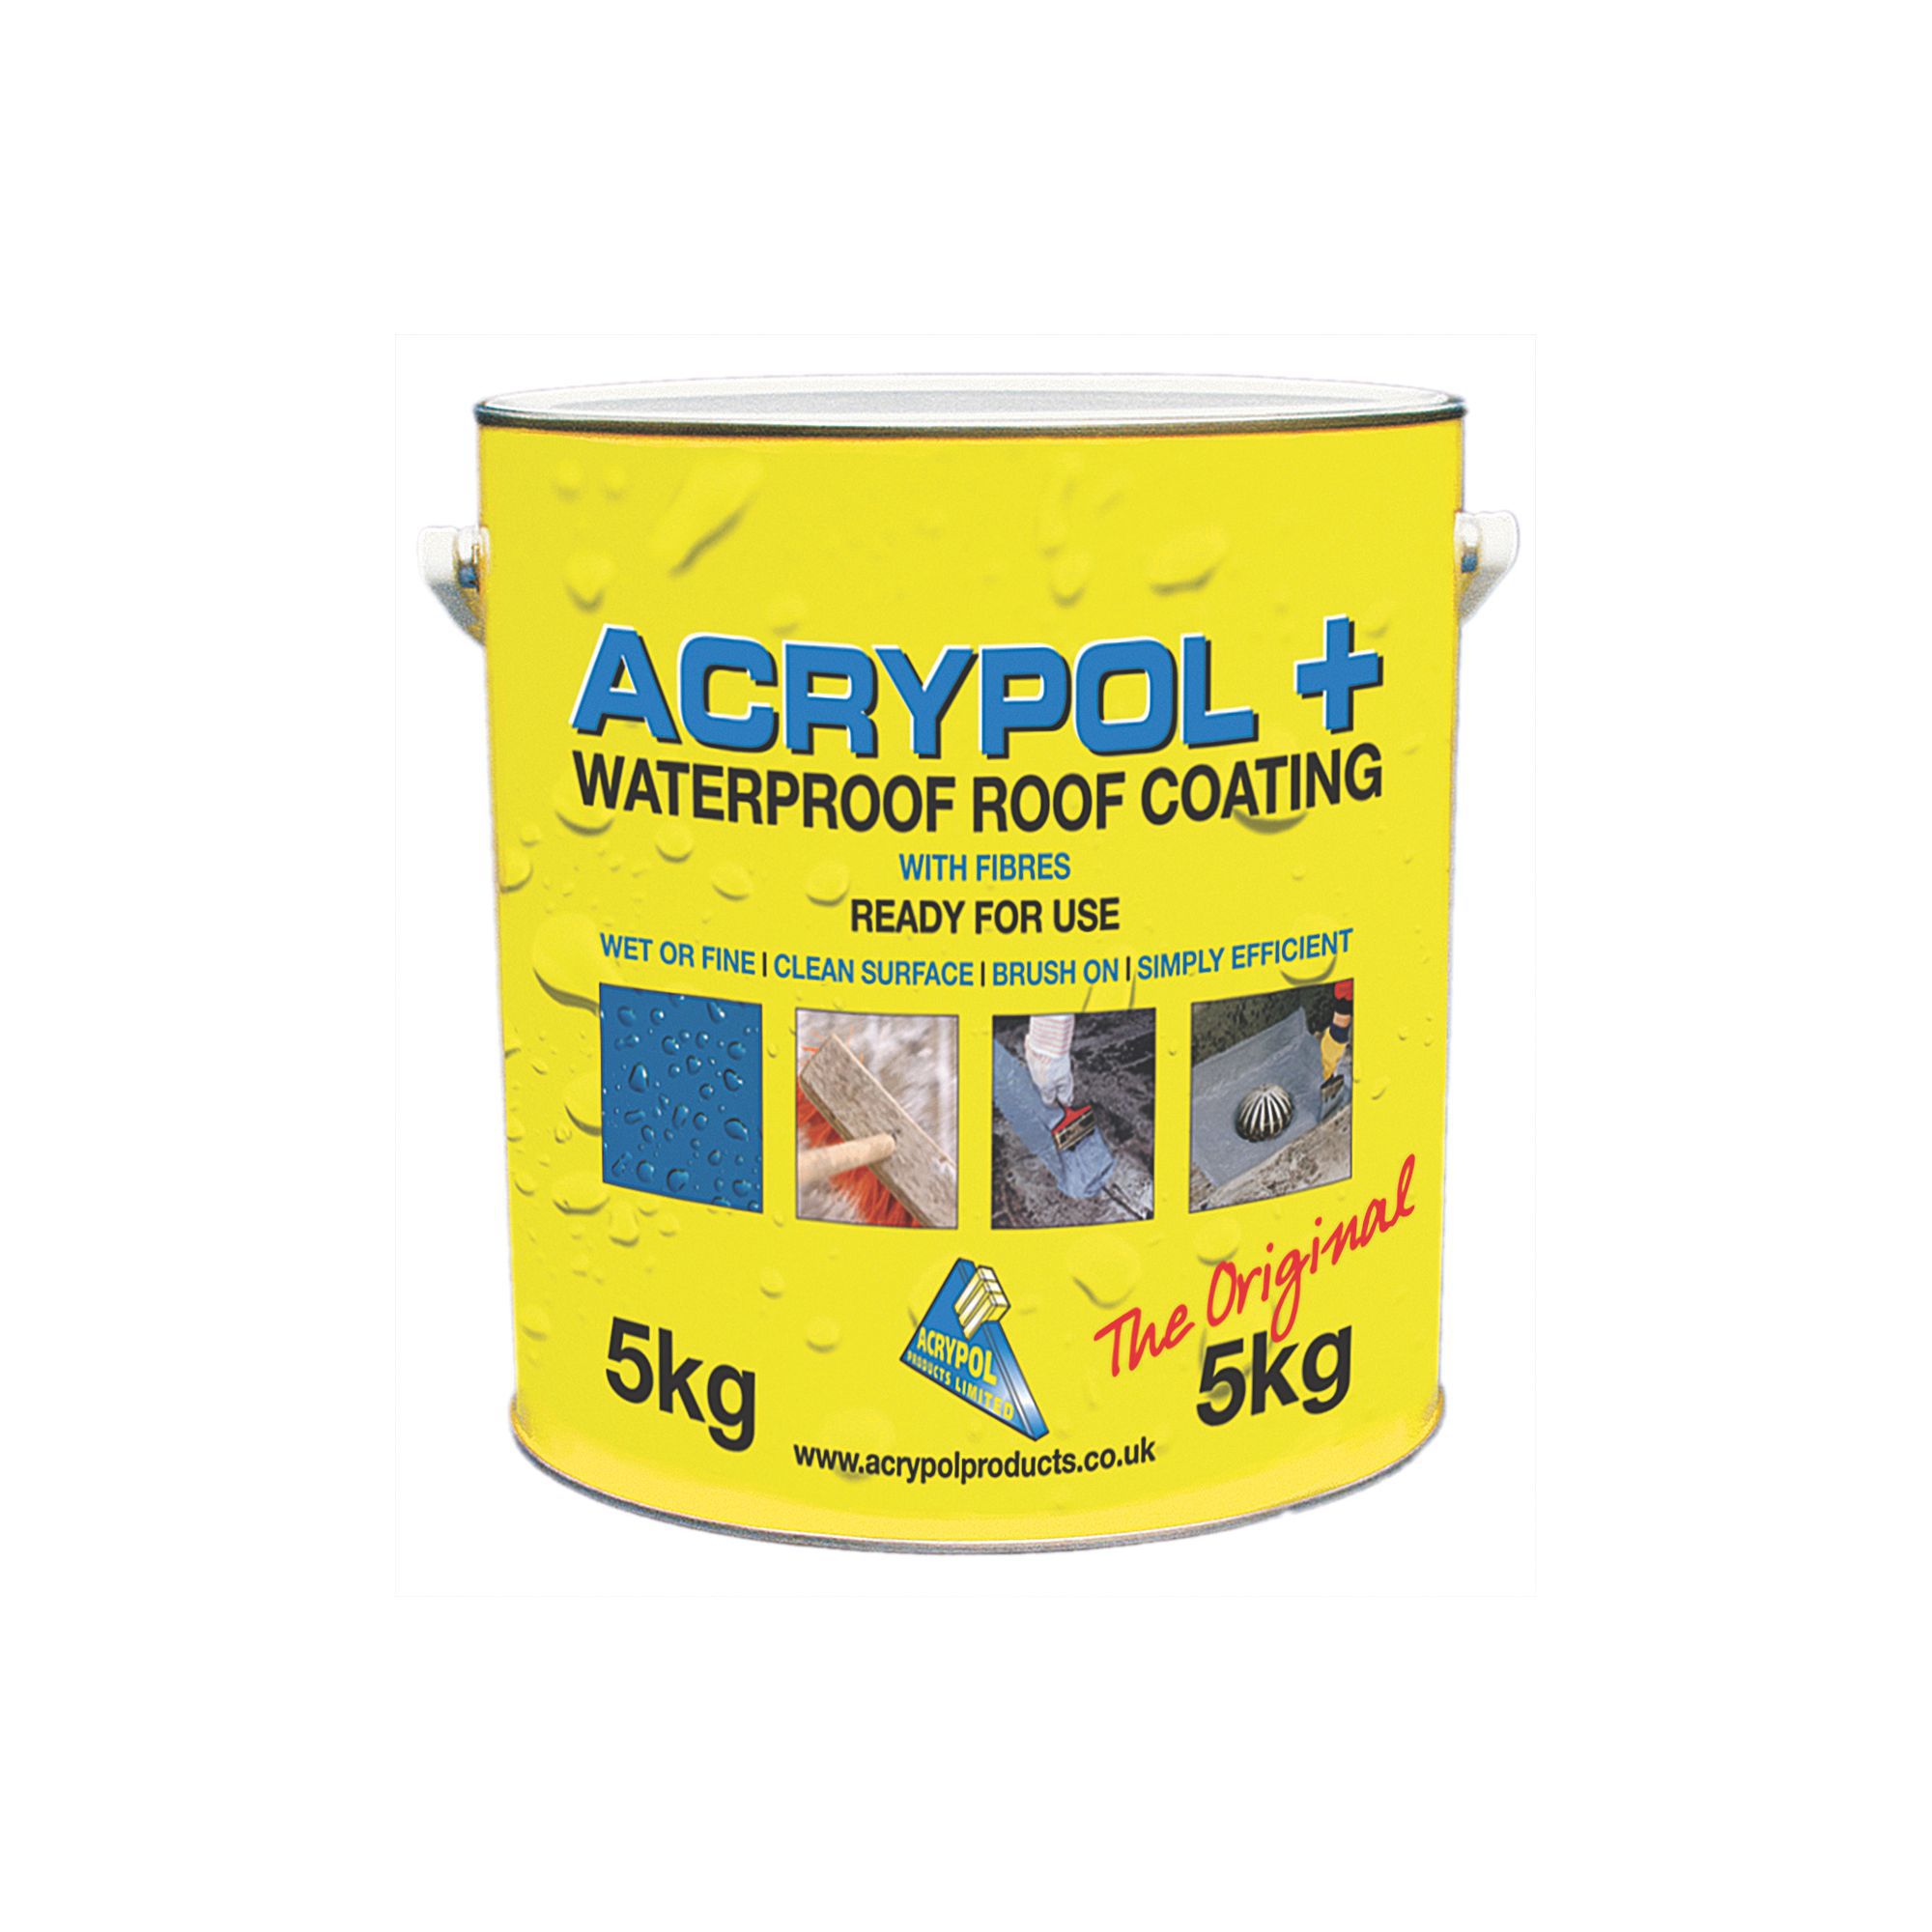 Image of Acrypol+ Grey Waterproof Roof Coating - 5kg